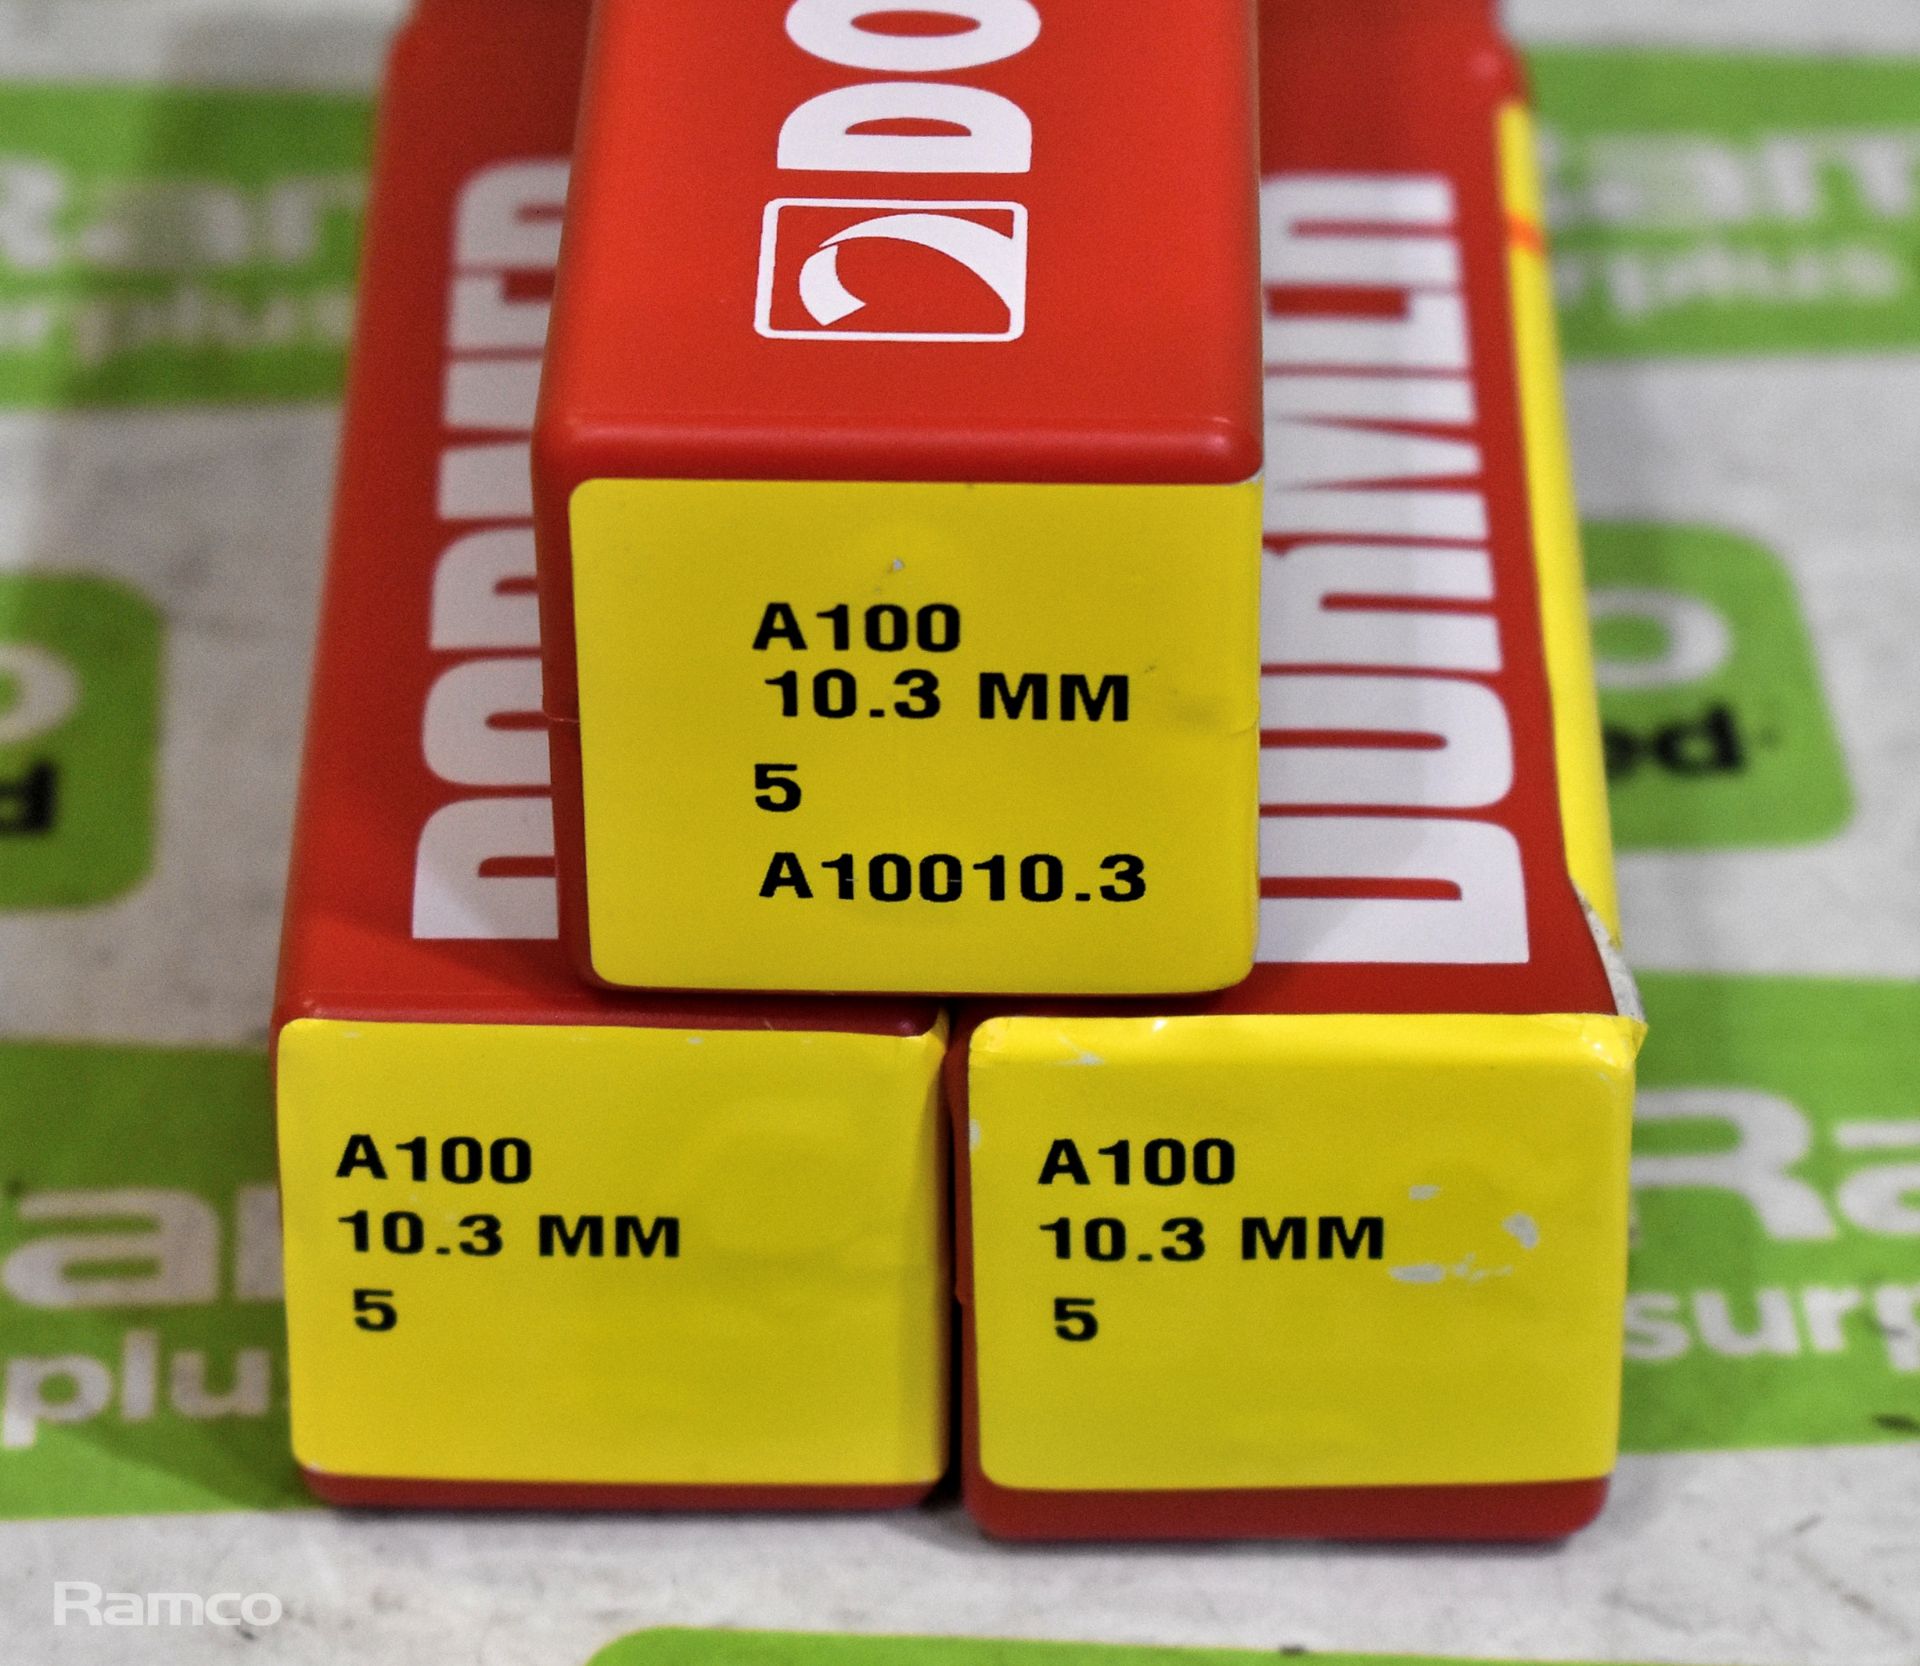 3x packs of Dormer 10.3mm A100 HSS jobber drill bits - 5 per pack - Image 2 of 2